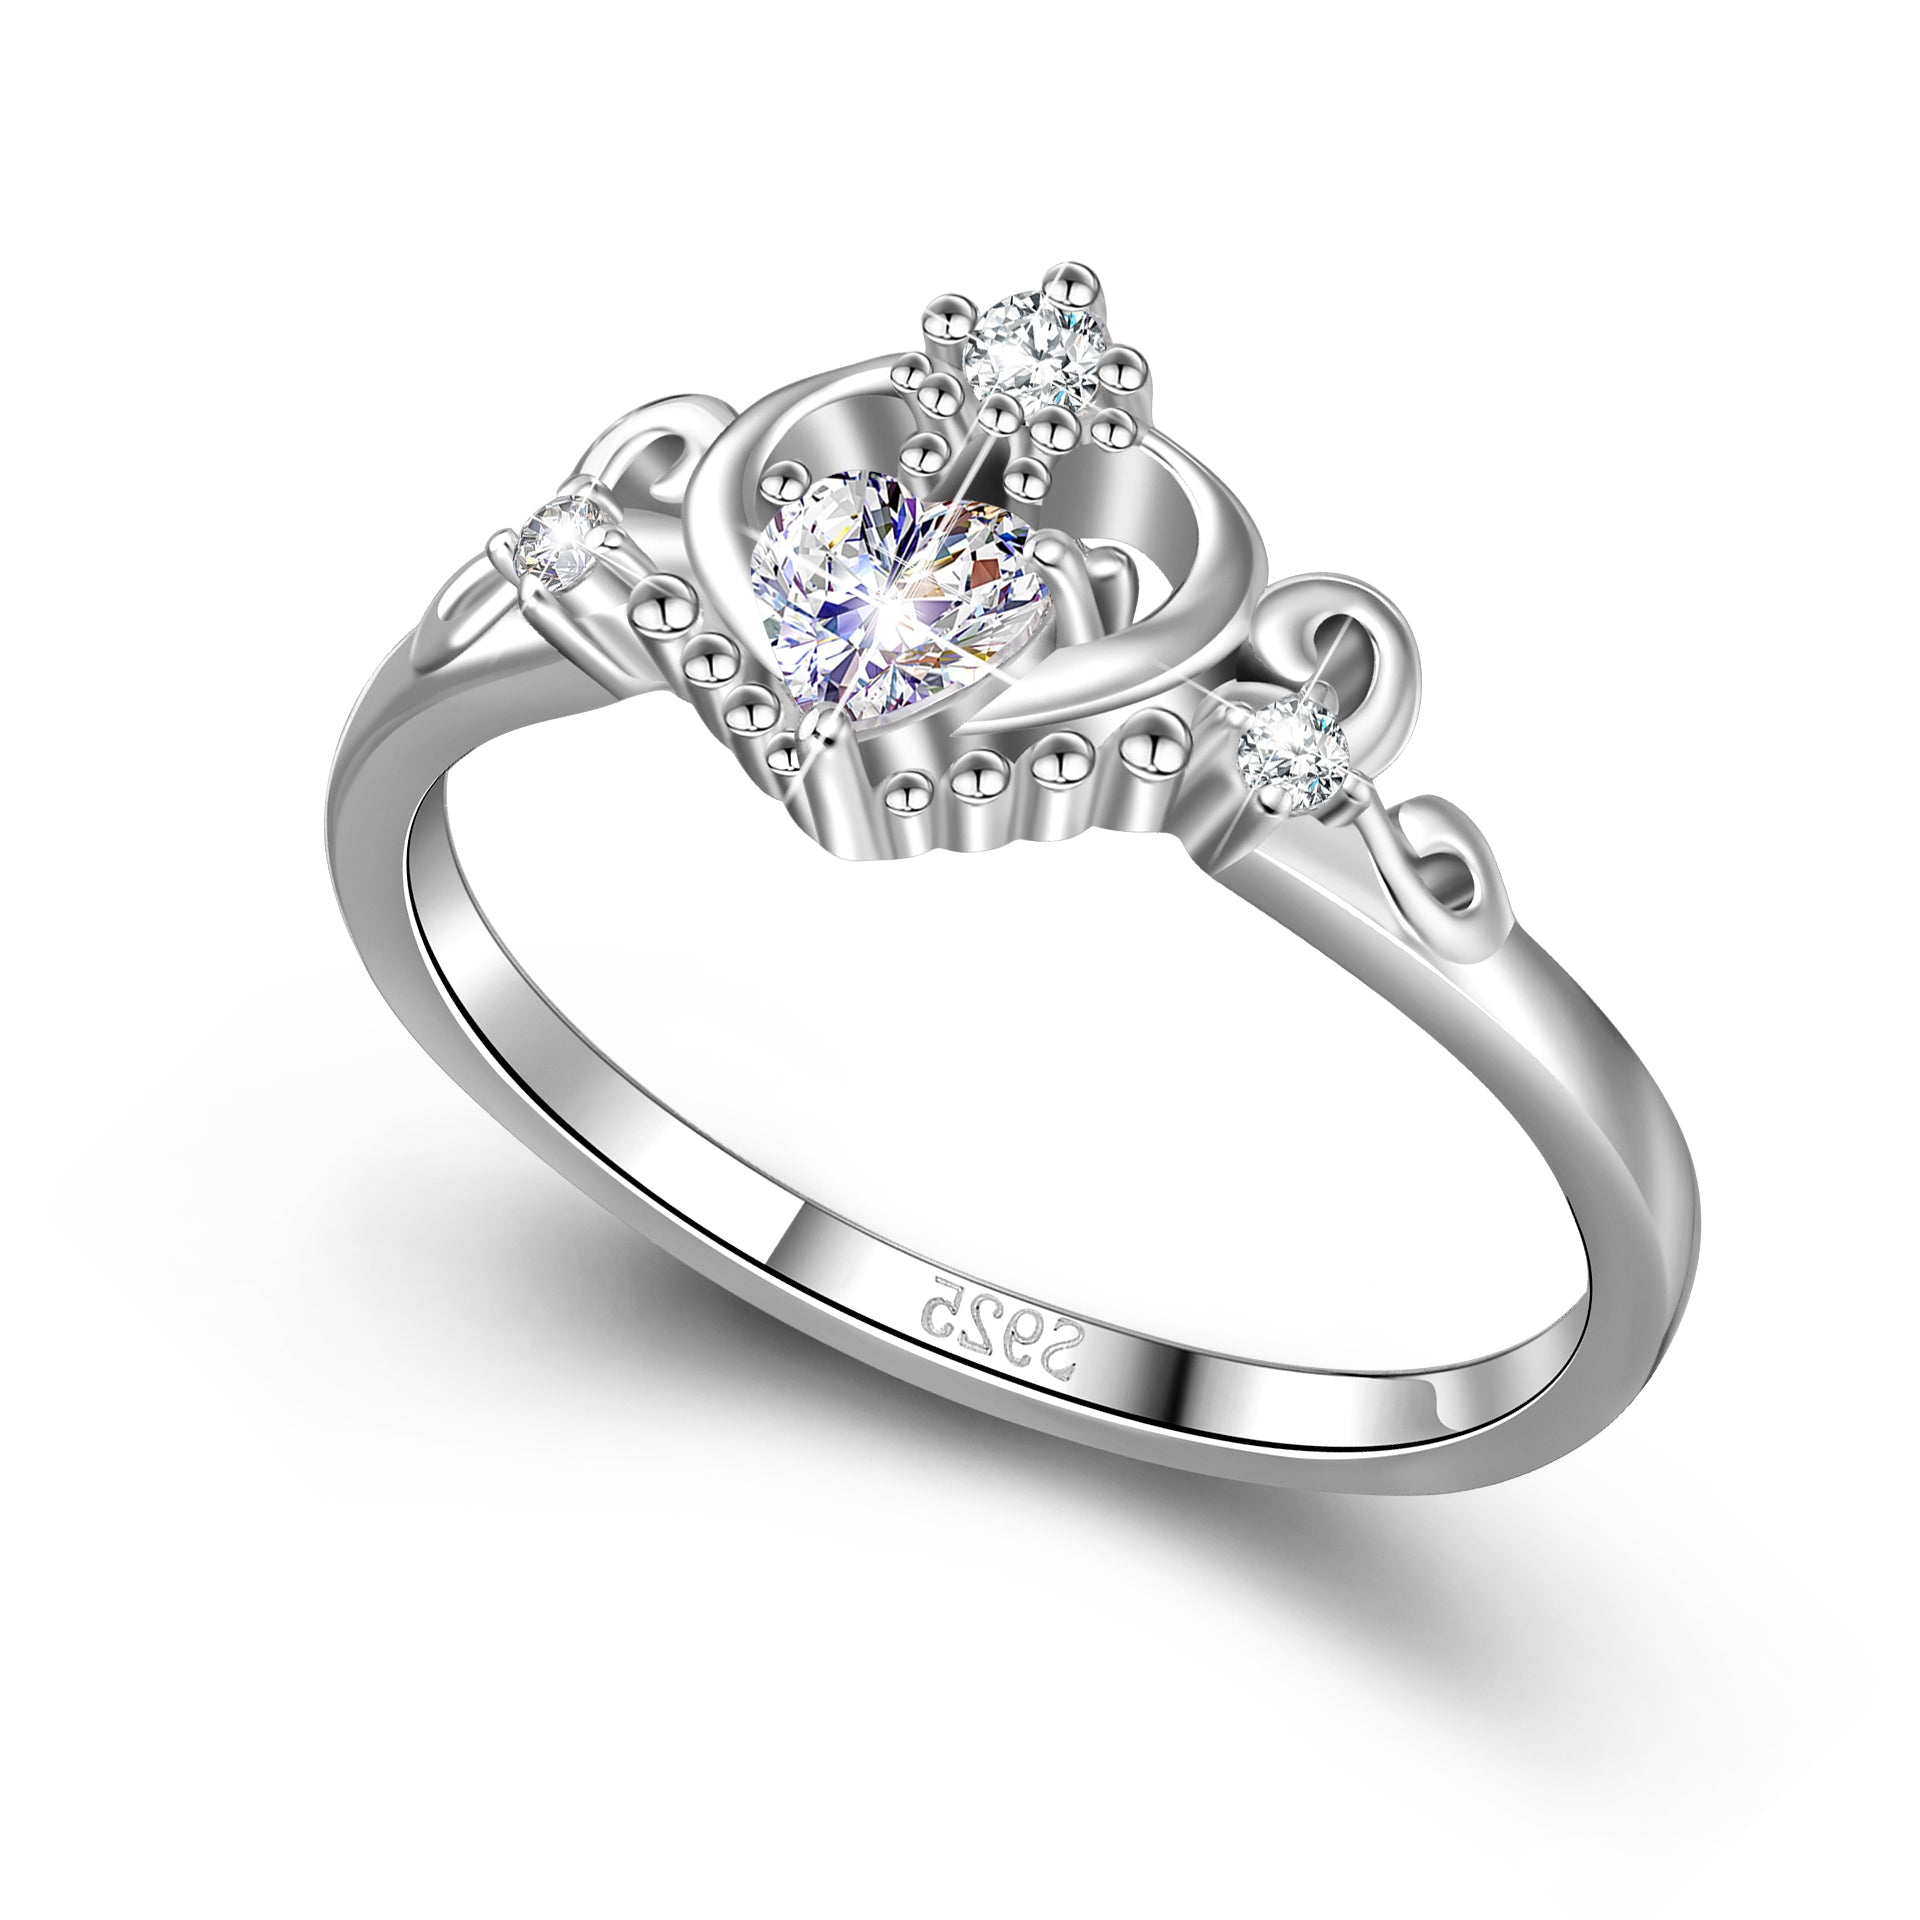 Stylish Board Turn a Princess by Wearing a Crown Ring! | Jewelry, Cute  jewelry, Crown ring